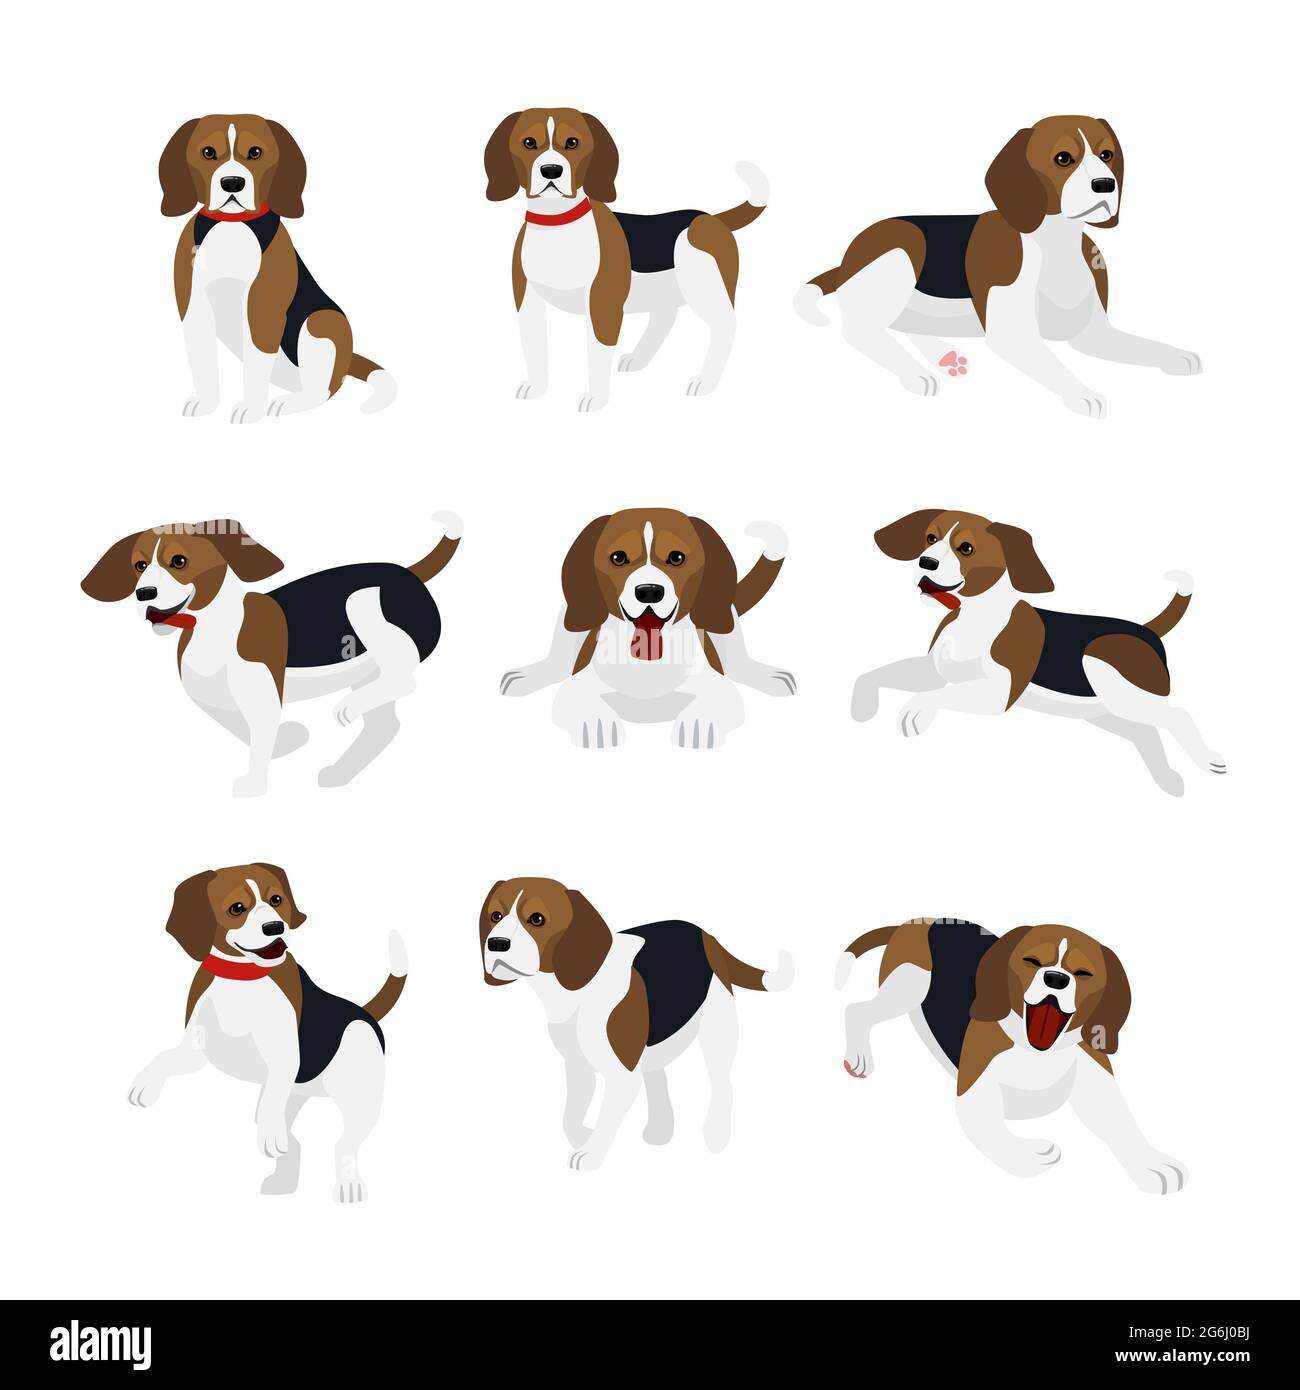 Illustrazione vettoriale insieme di simpatico e divertente beagle cane, azioni vivaci, giocare, jumping cani in design piatto. Illustrazione Vettoriale